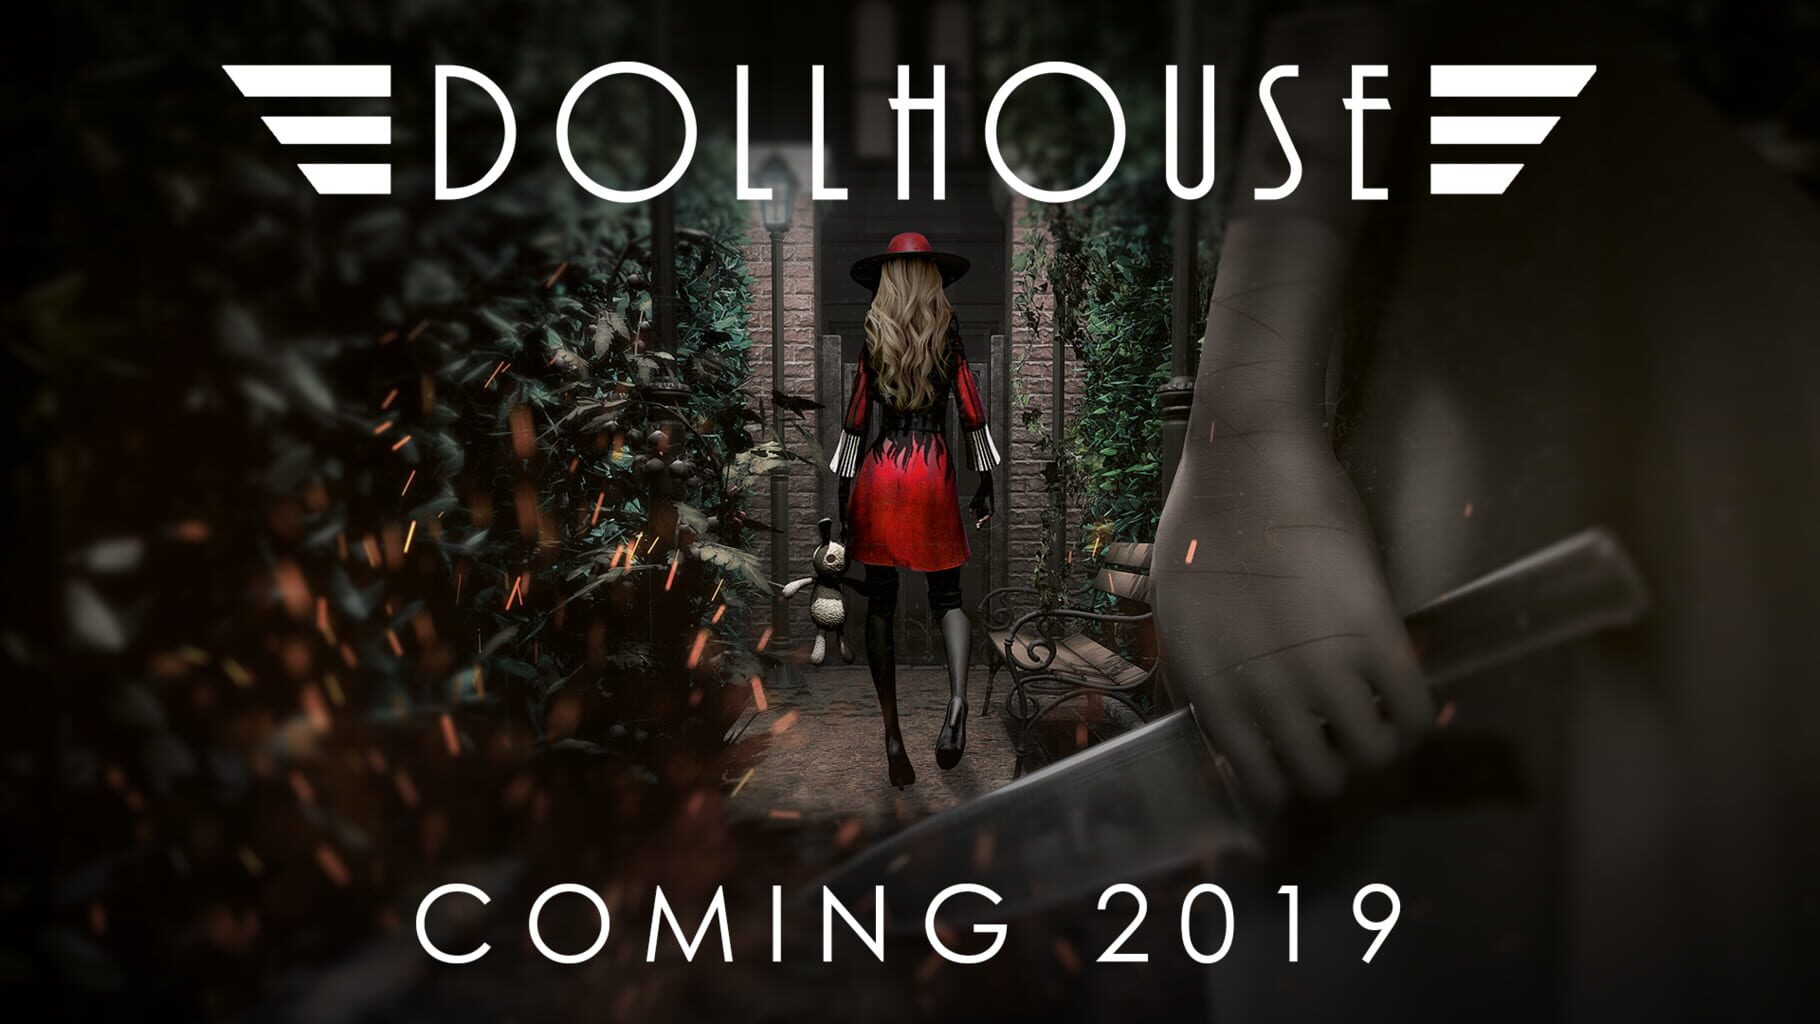 Dollhouse Image